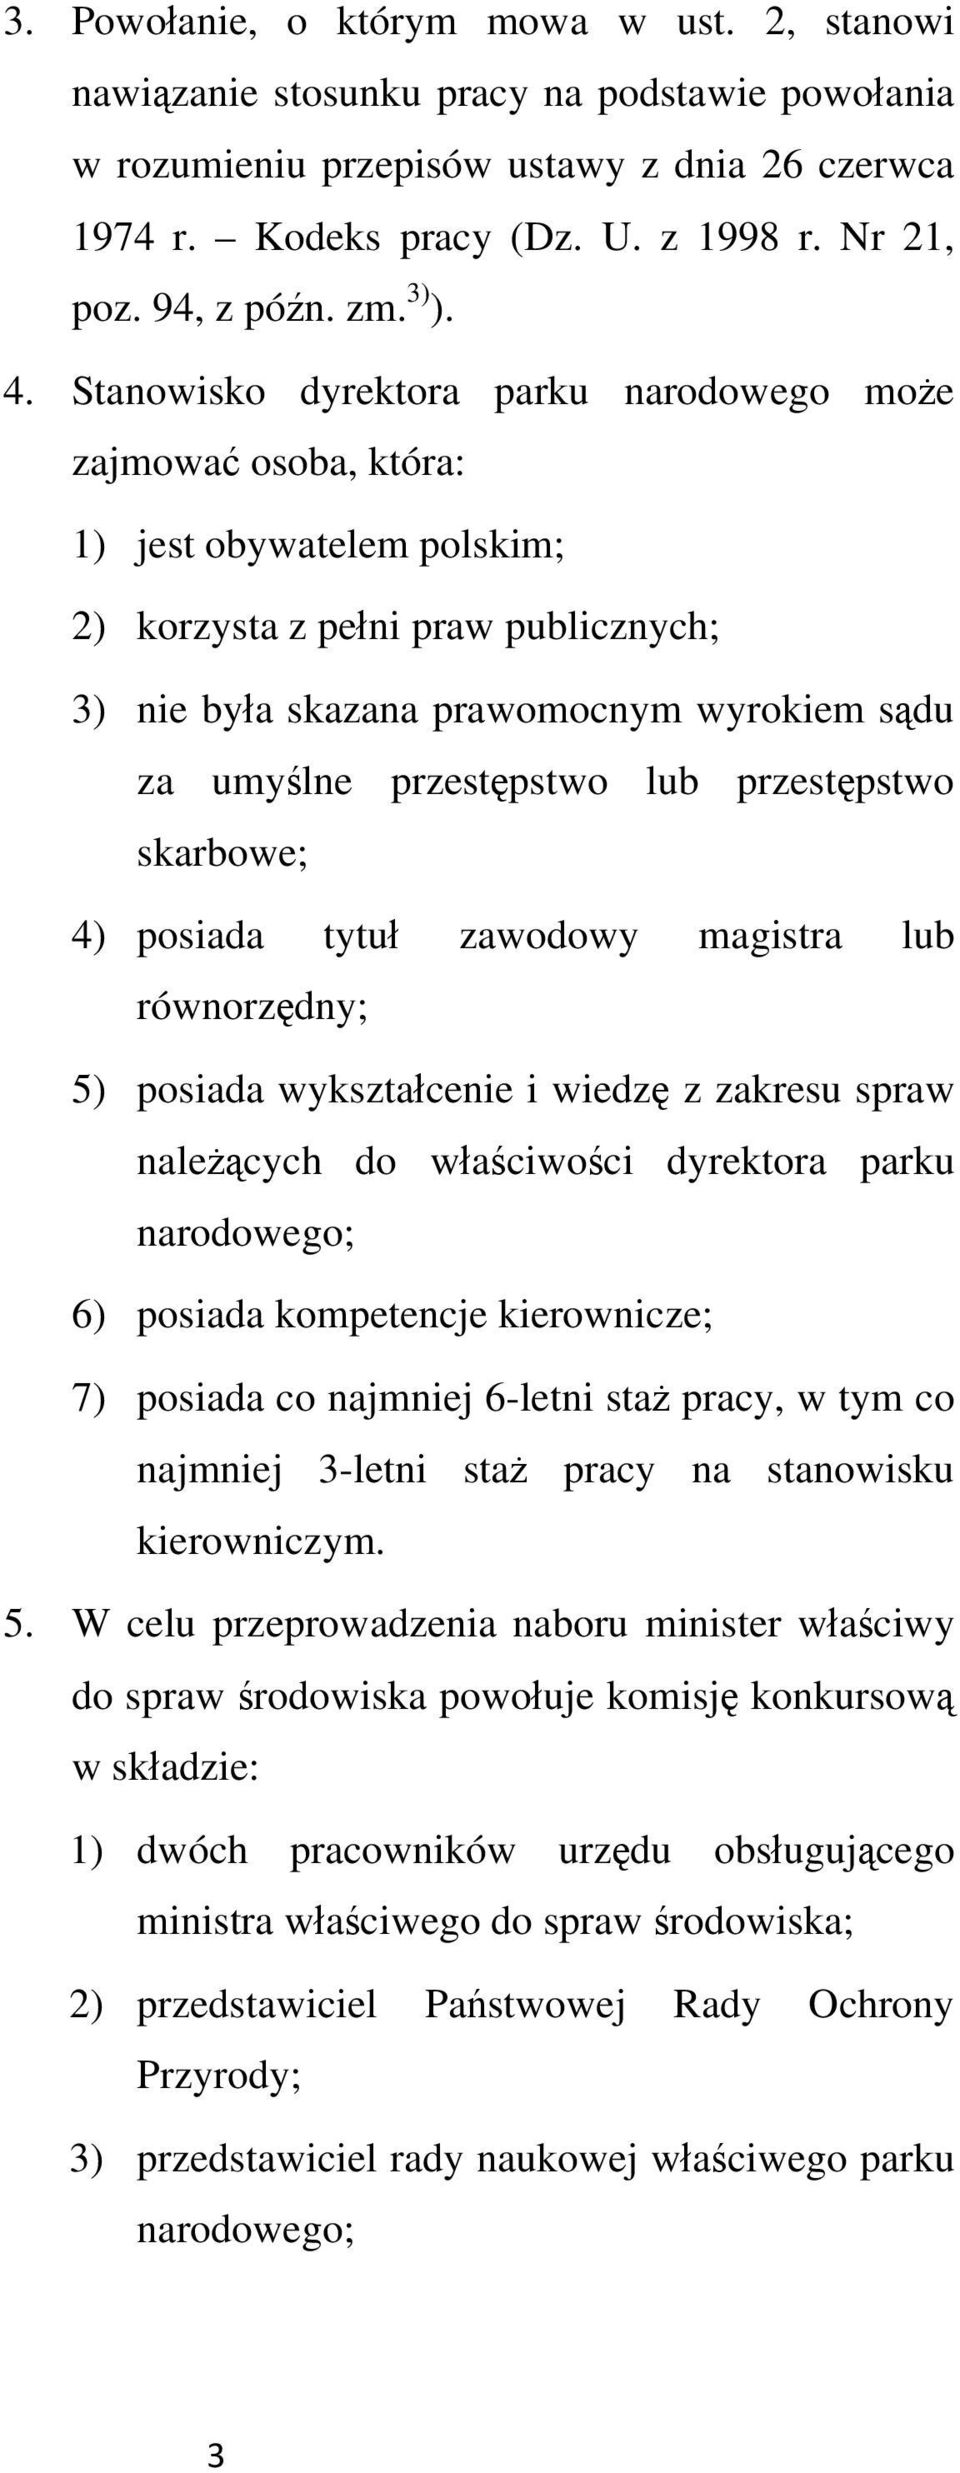 Stanowisko dyrektora parku narodowego moe zajmowa osoba, która: 1) jest obywatelem polskim; 2) korzysta z peni praw publicznych; 3) nie bya skazana prawomocnym wyrokiem sdu za umylne przestpstwo lub